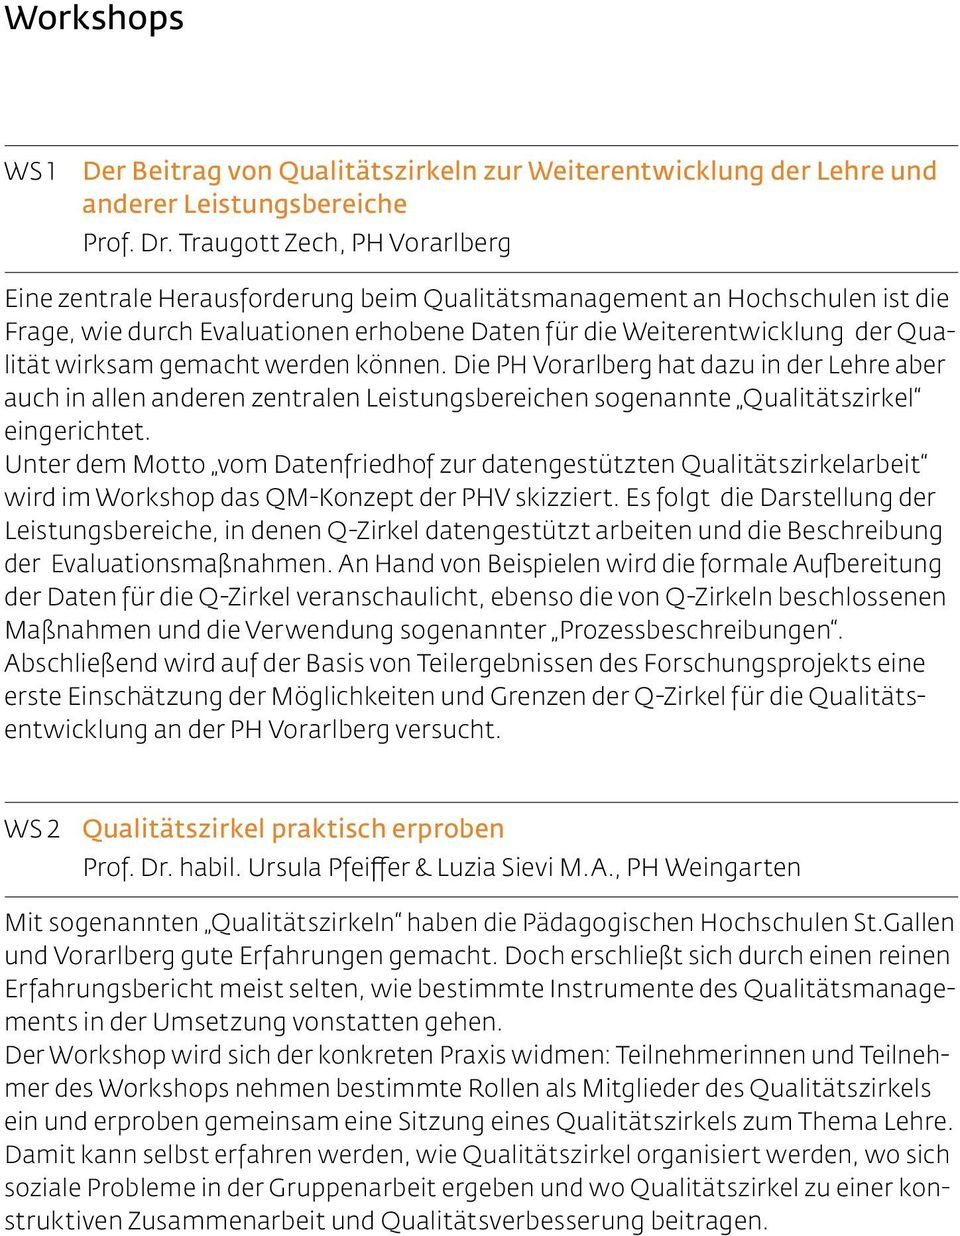 gemacht werden können. Die PH Vorarlberg hat dazu in der Lehre aber auch in allen anderen zentralen Leistungsbereichen sogenannte Qualitätszirkel eingerichtet.